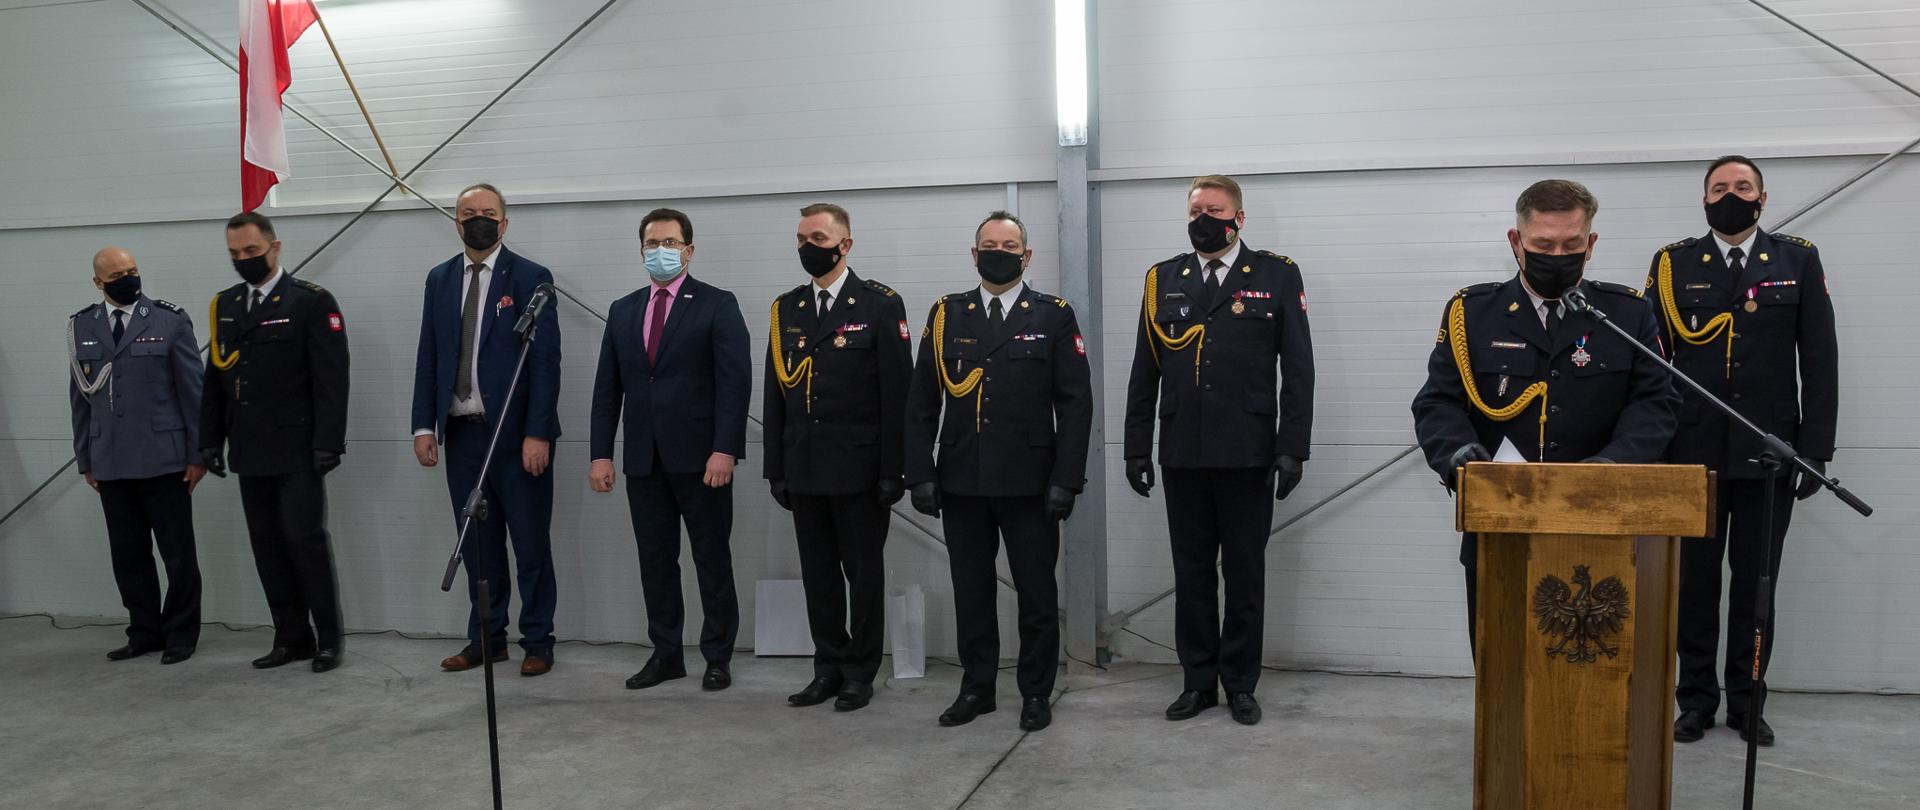 na zdjęciu sześciu strażaków i jeden policjant w mundurach galowych oraz dwóch mężczyzn w garniturach stojących w hali w rzędzie pod ścianą, jeden ze strażaków stoi przy mównicy, na ścianie hali flaga polski